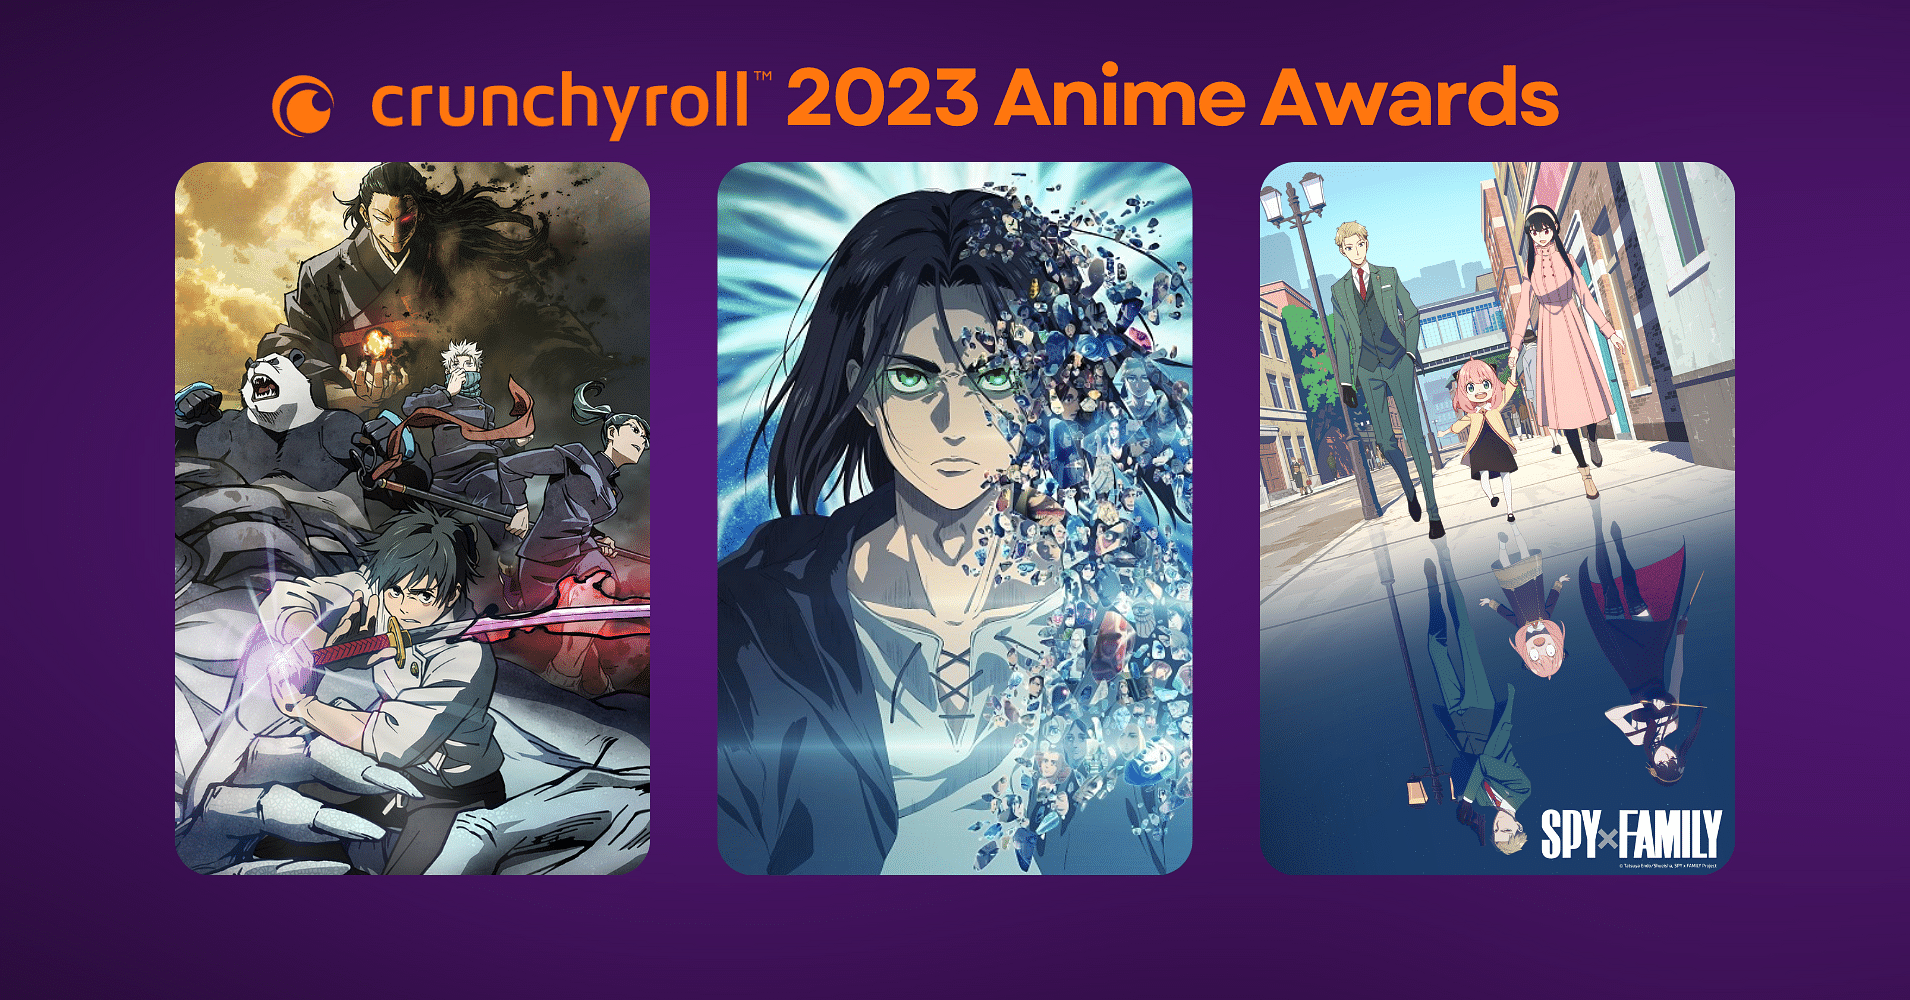 Пользователи reddit признали Re:Zero лучшим аниме 2020 года. Итоги /r/Anime  Awards - GoHa.Ru